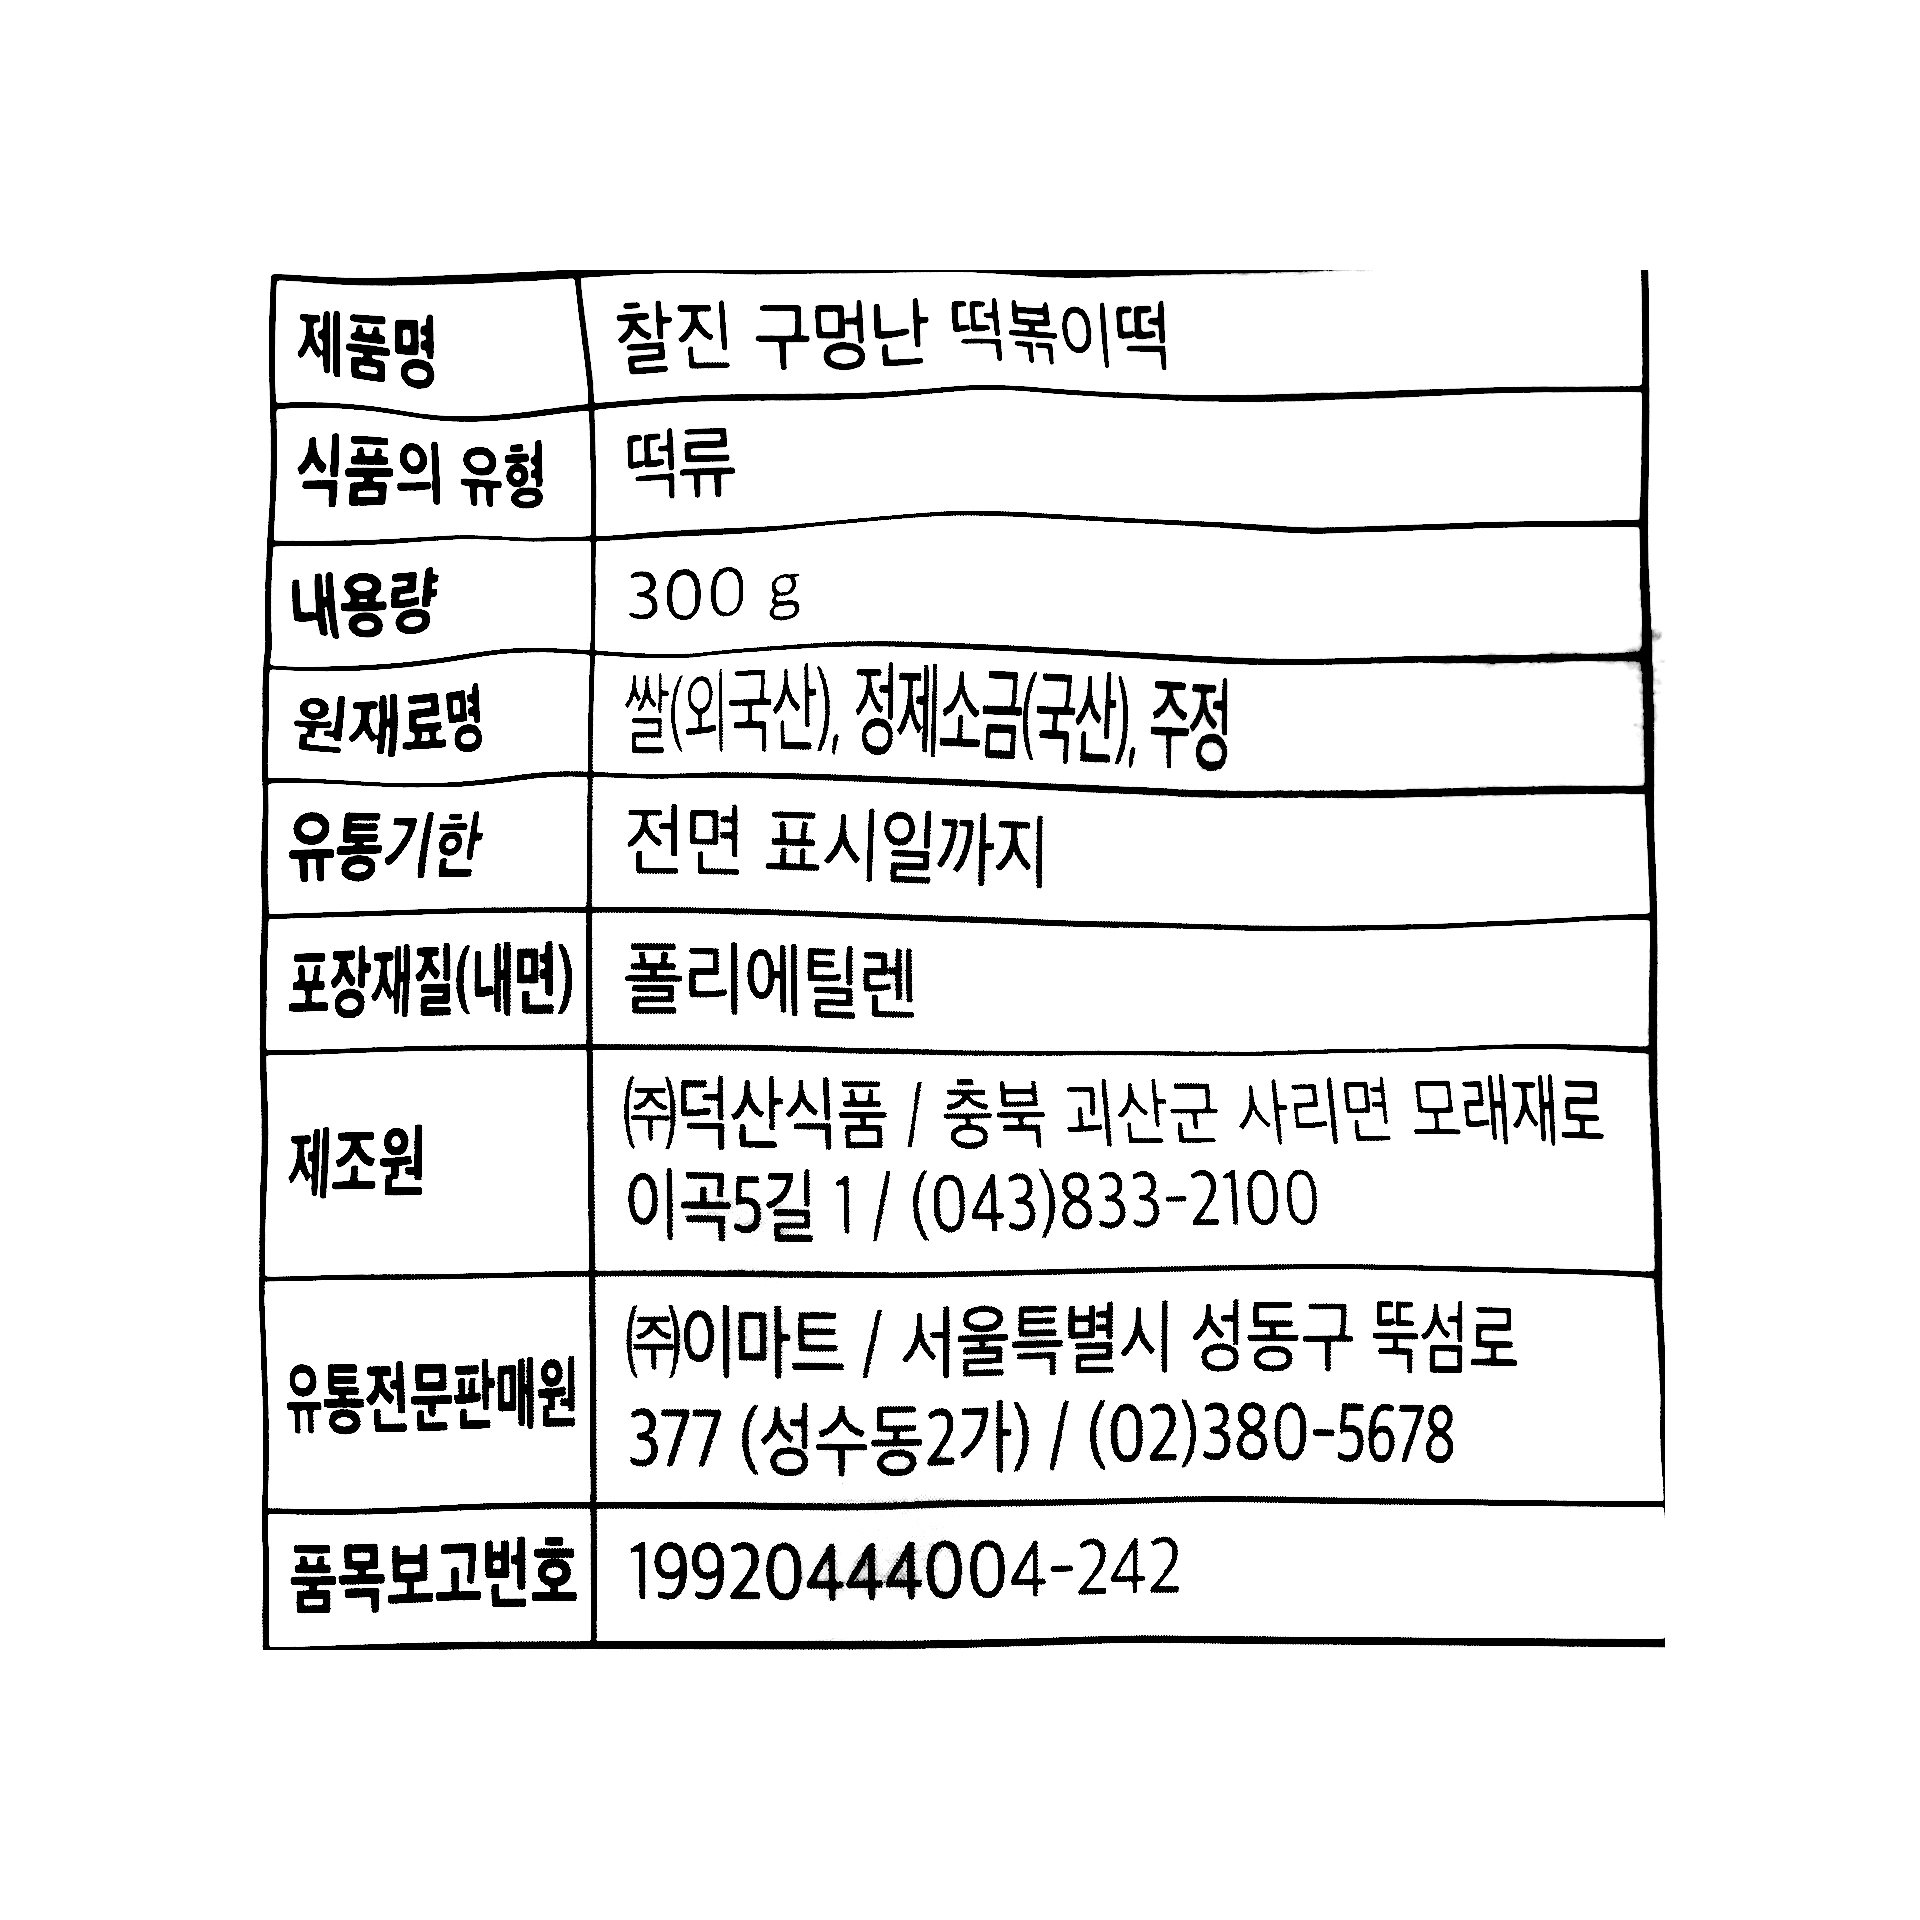 韓國食品-[피코크] 구멍난 떡볶이떡 300g